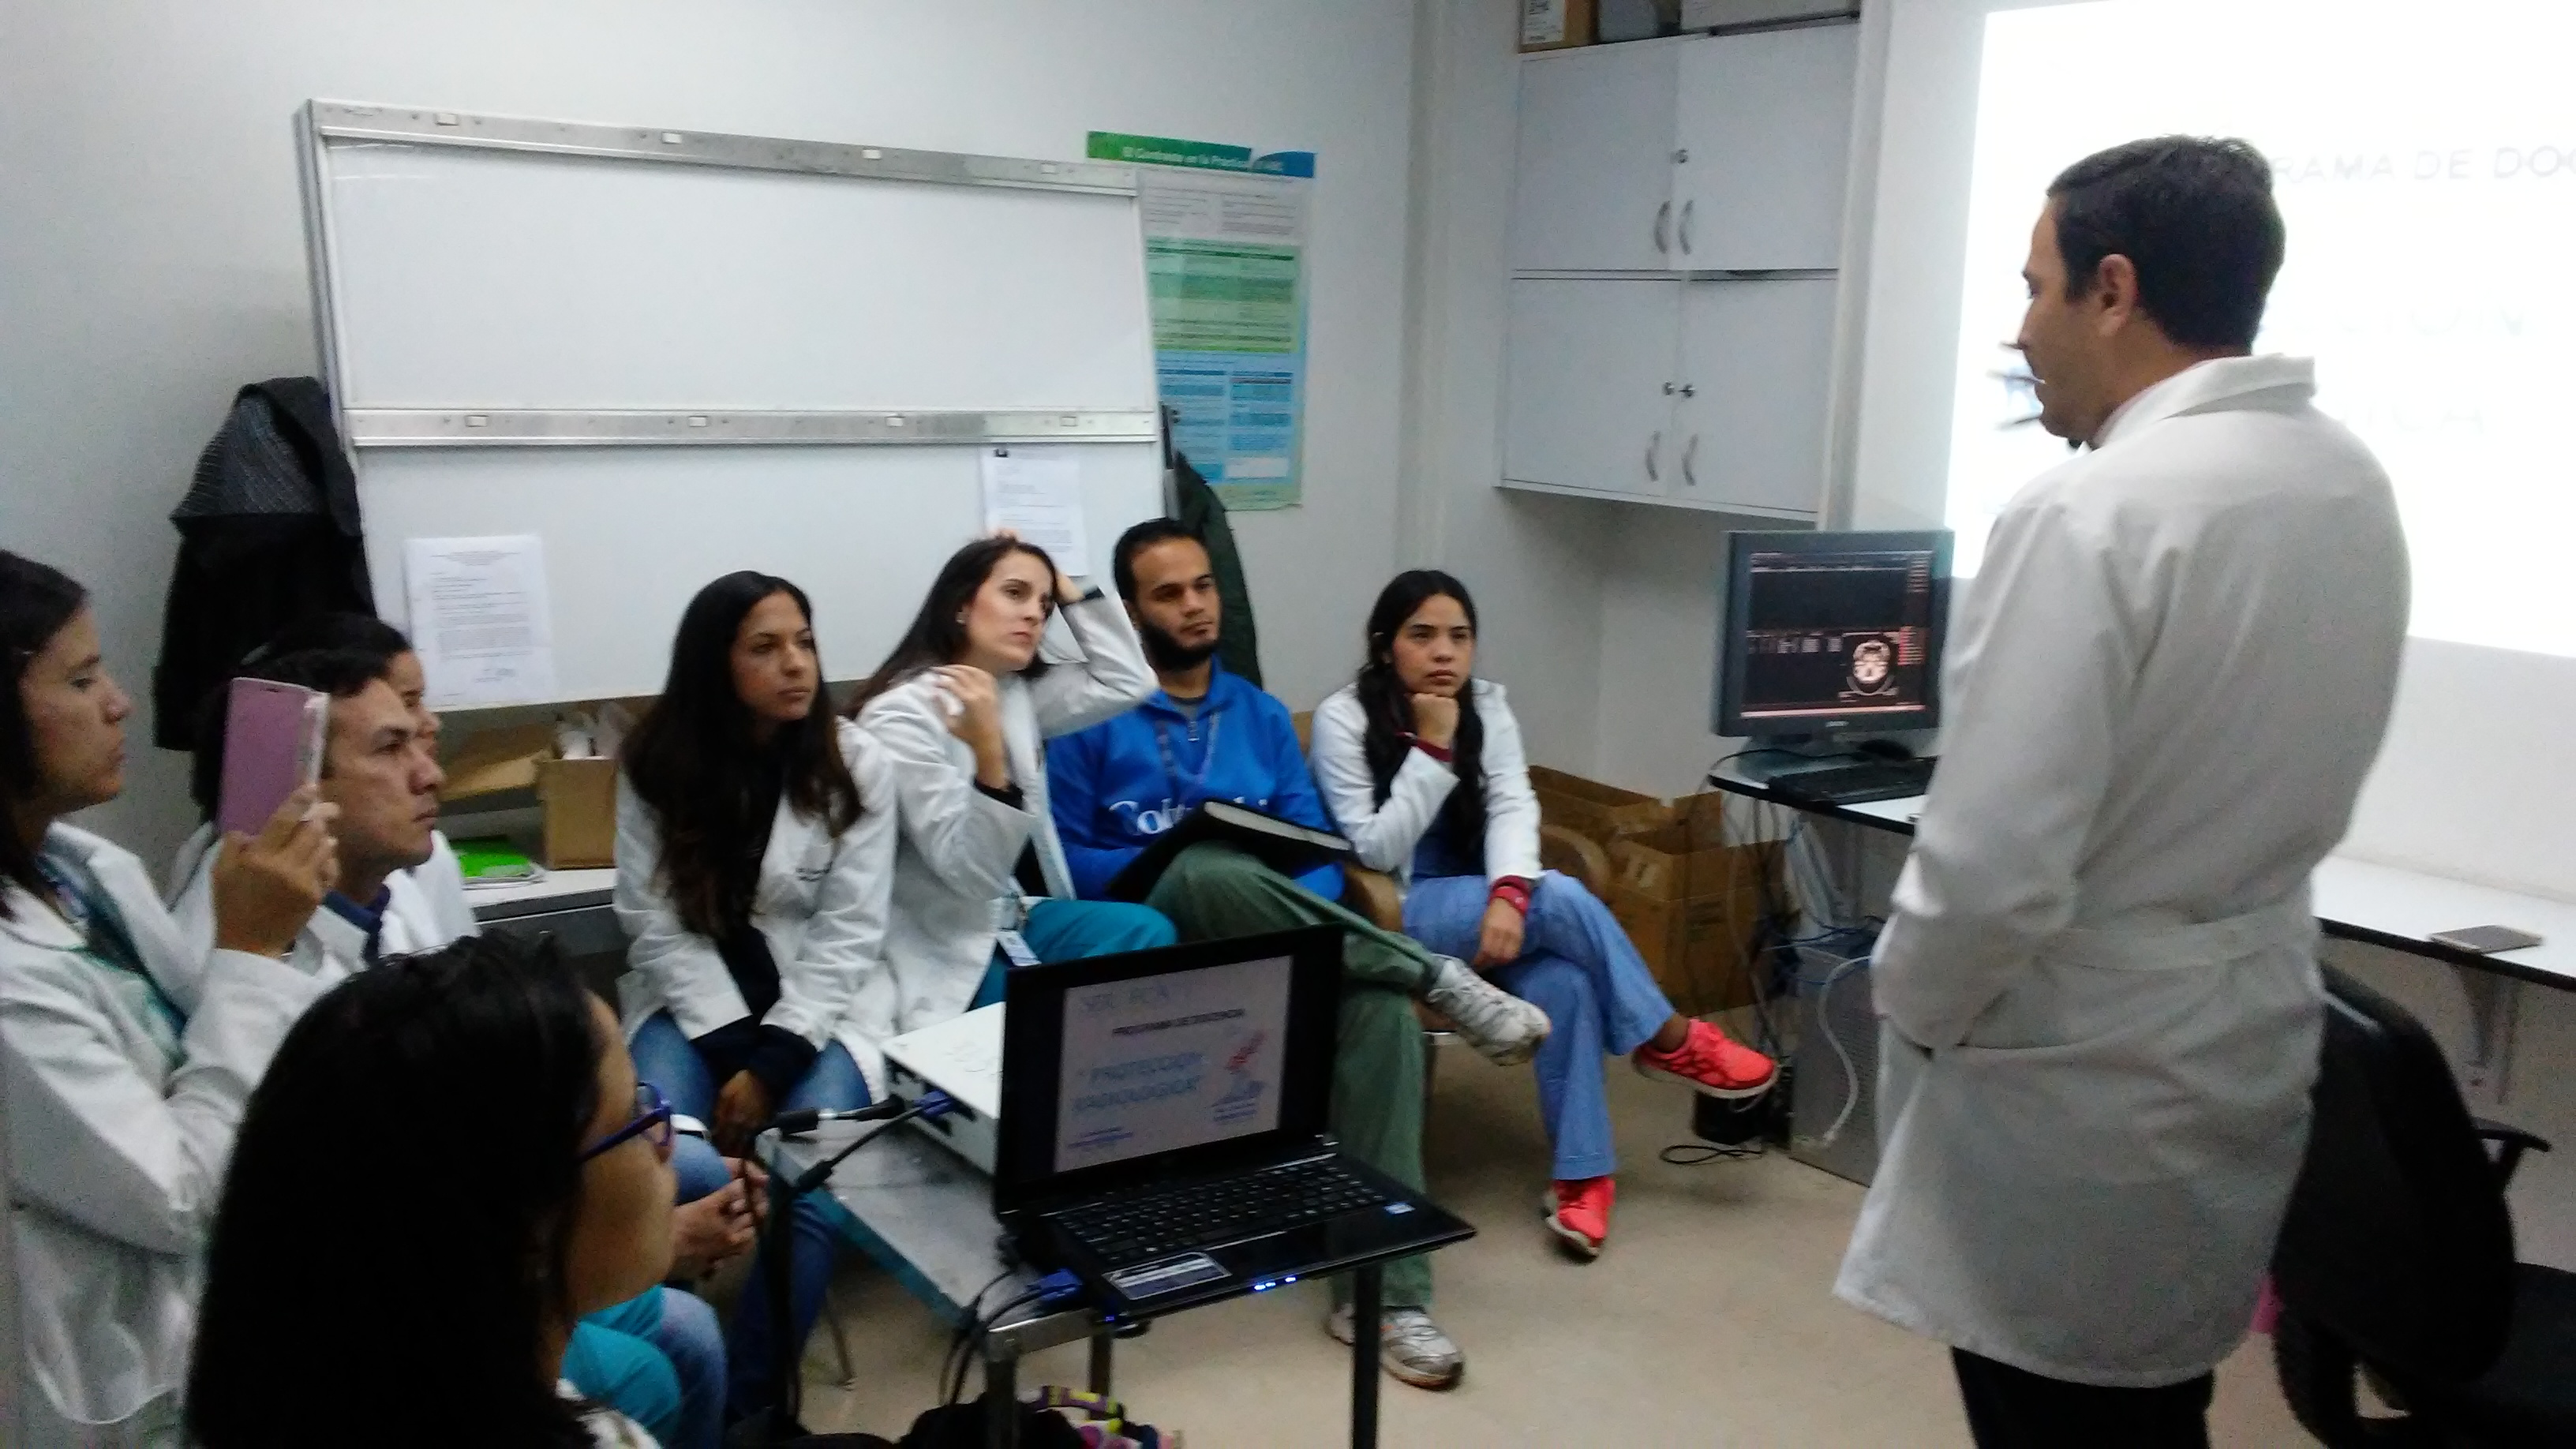 Físico médico Omar Arias: No hay un mamógrafo operativo en los hospitales venezolanos